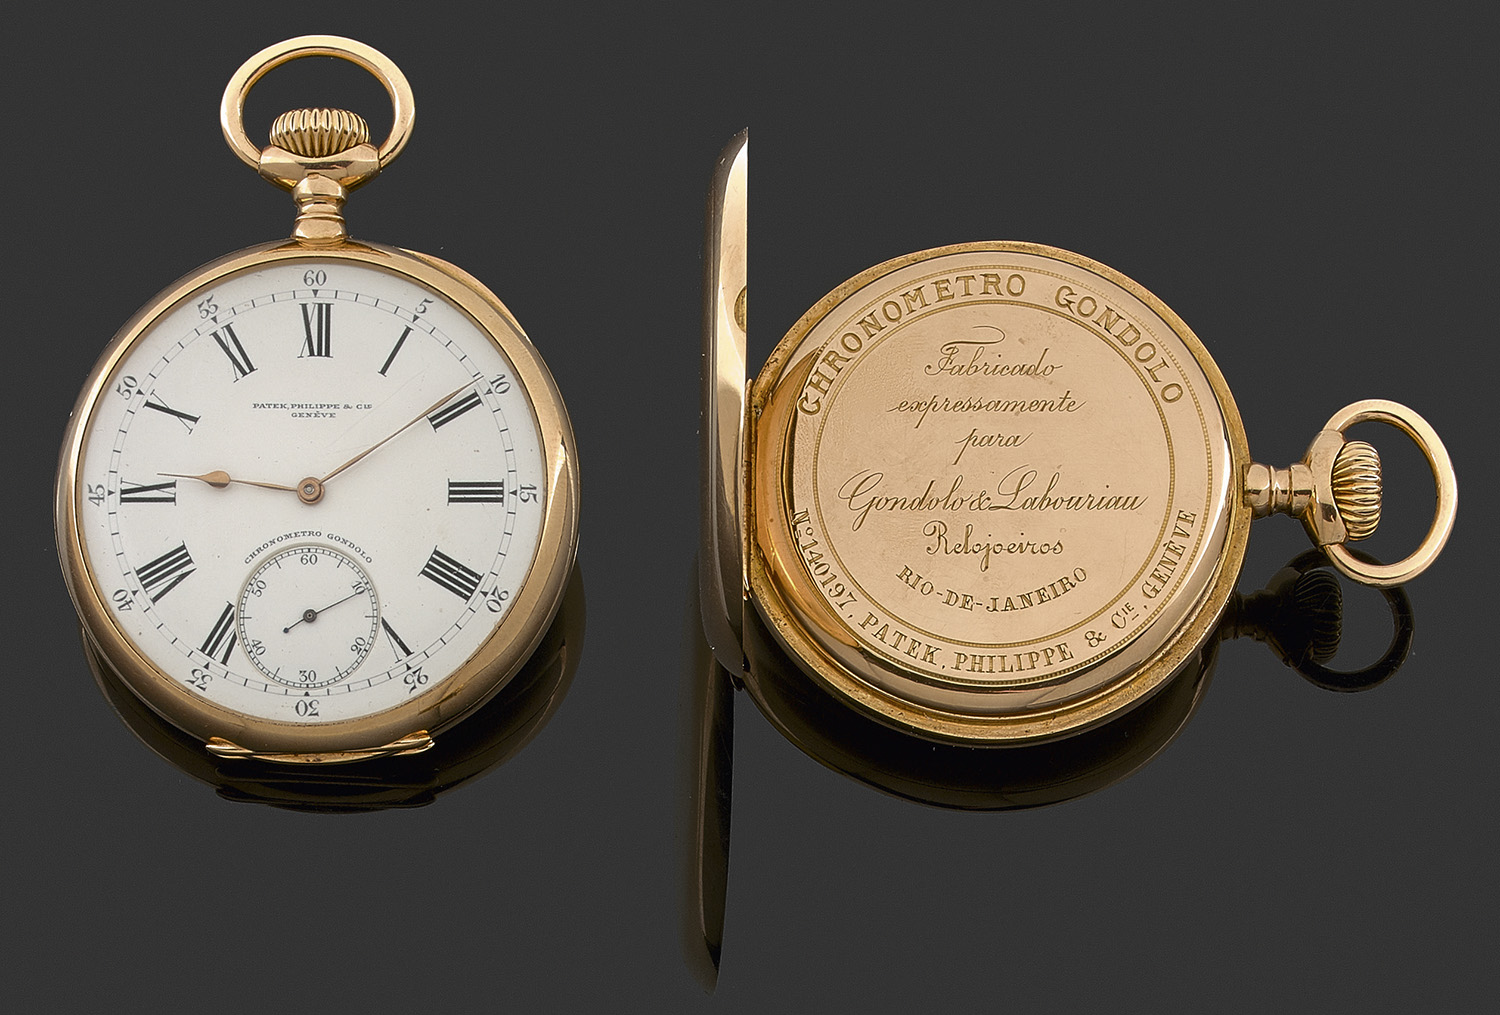 PATEK PHILIPPECHRONOMETRO GONDOLOvers 1891Importante montre de poche en or jaune. Cadran émail blanc